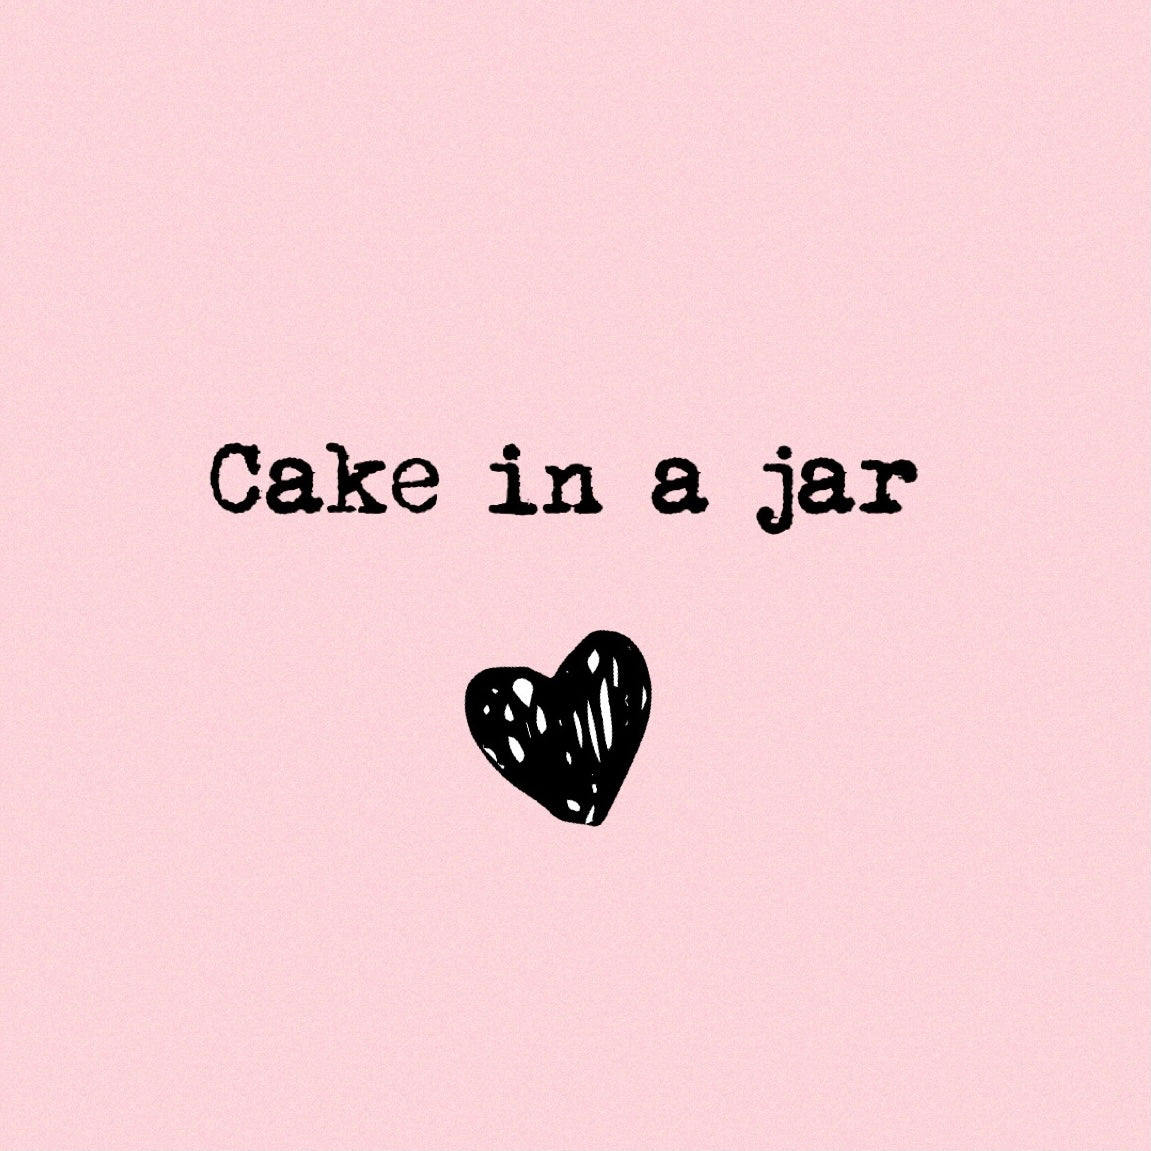 CAKE IN A JAR